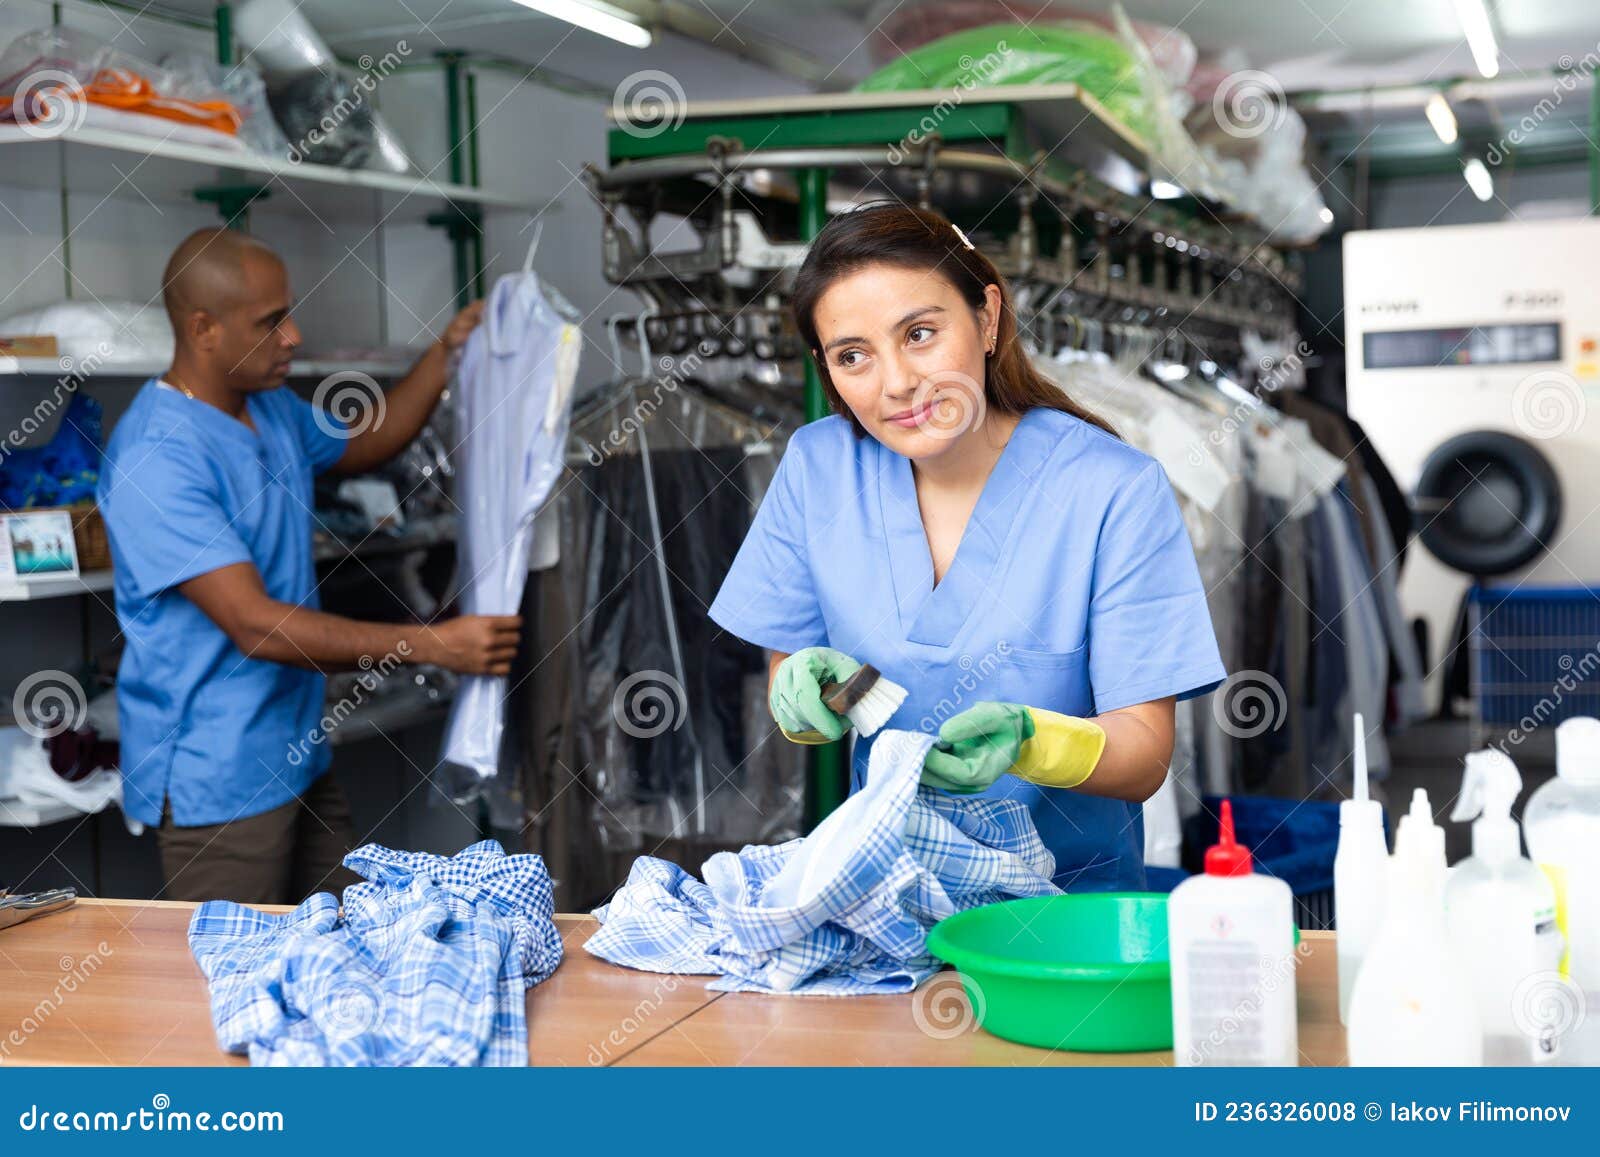 laundry jobs